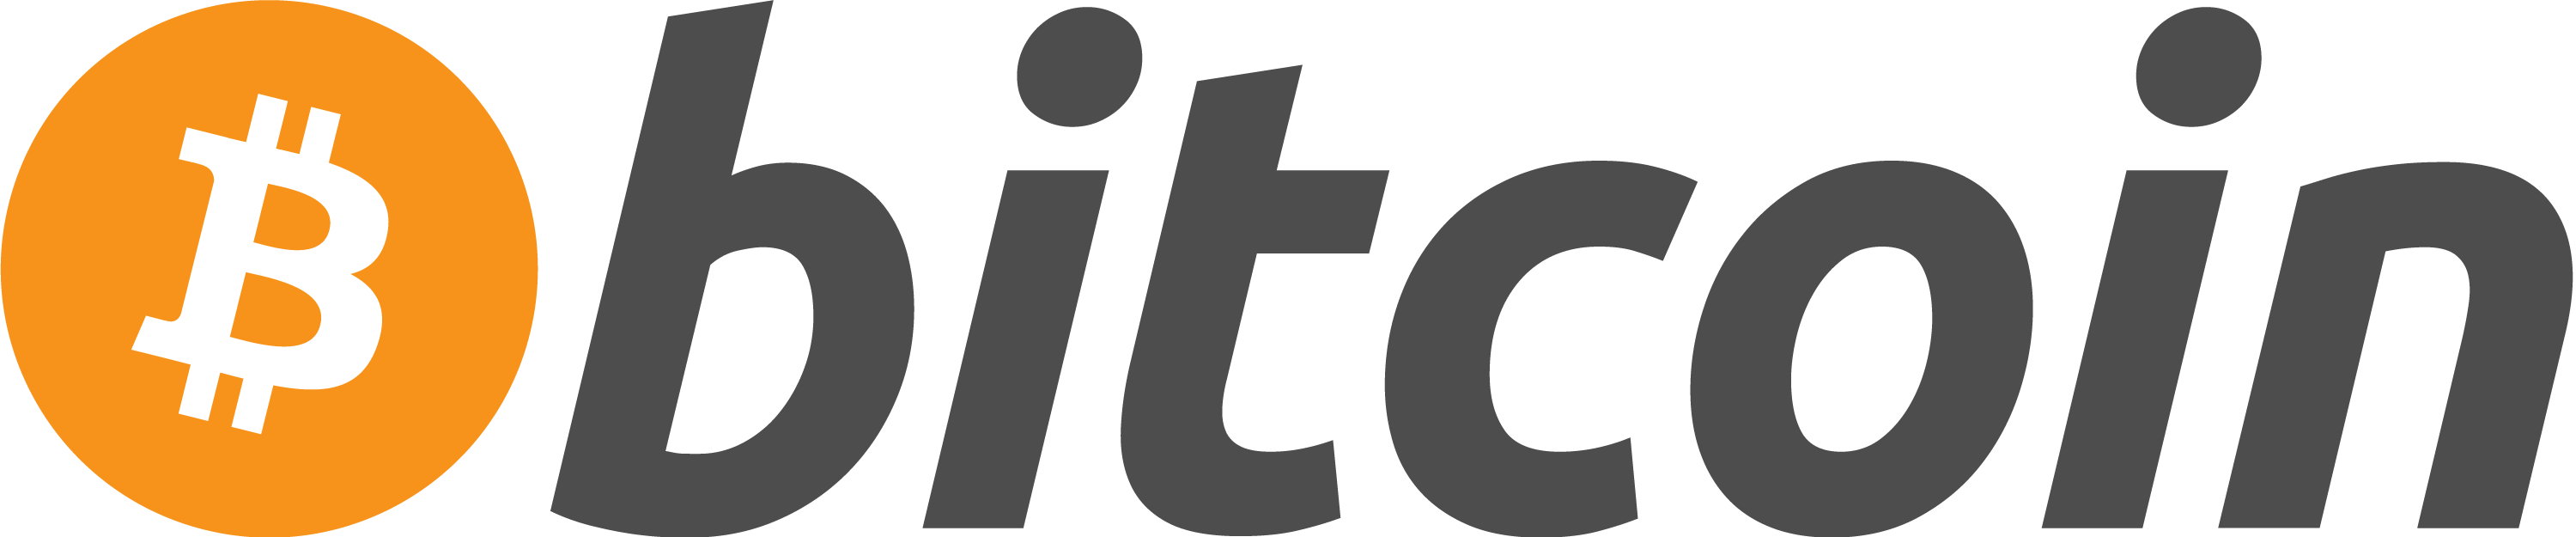 bitcoin logo transparent